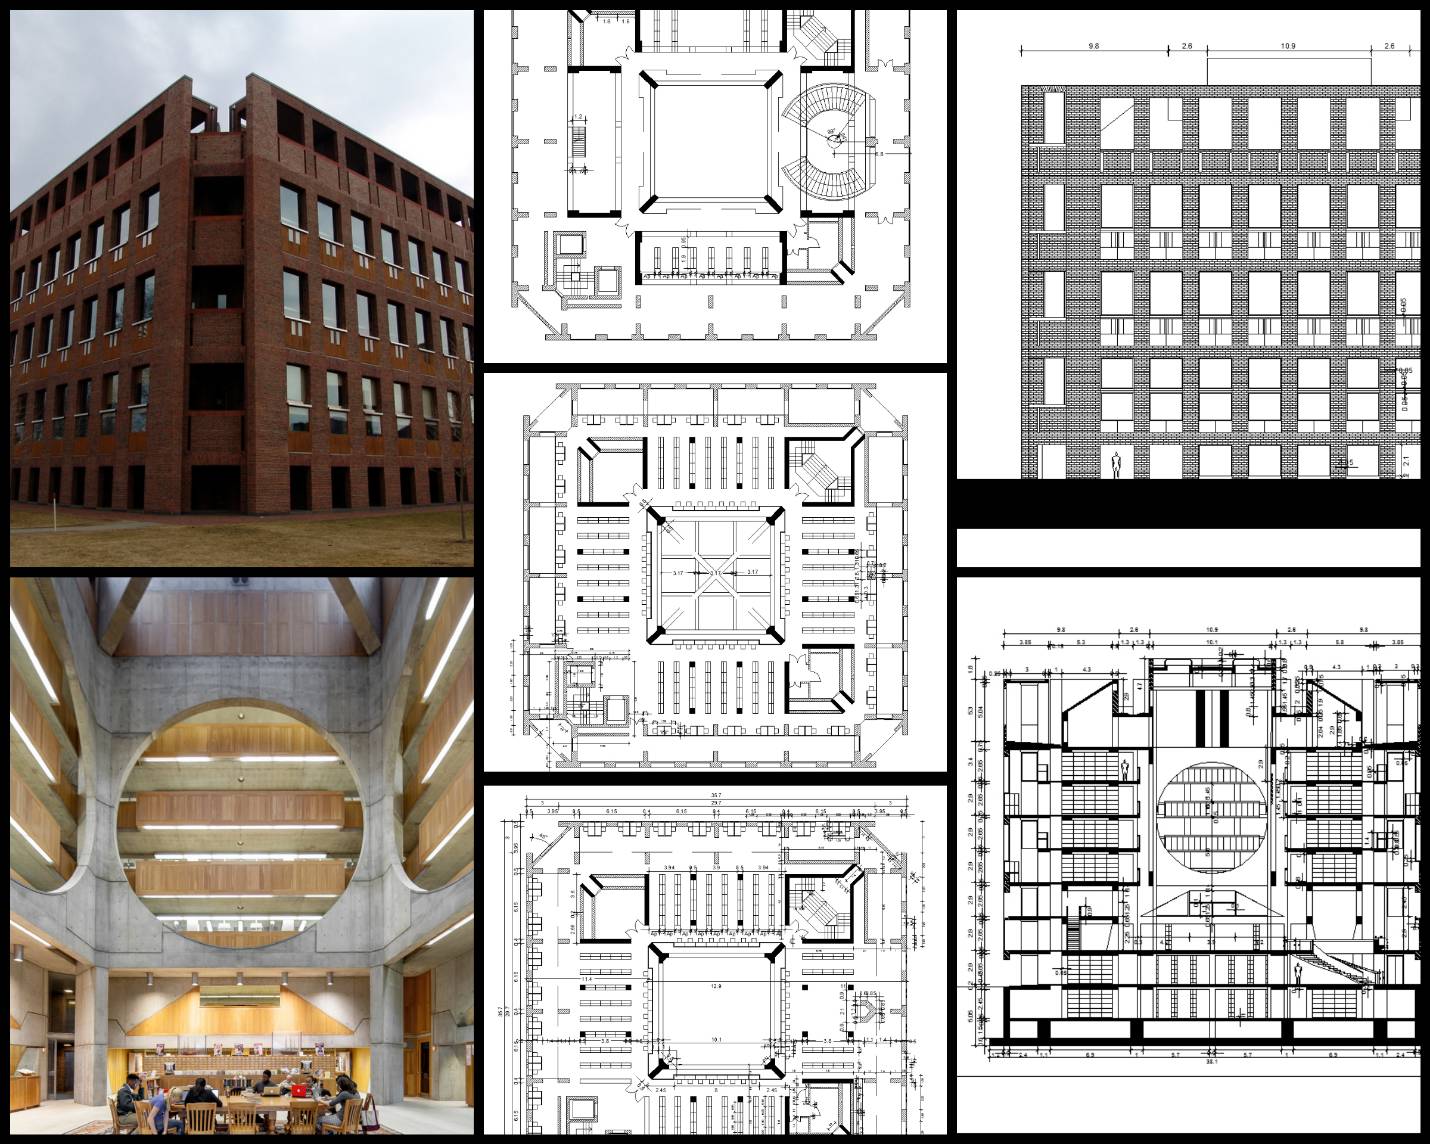 【世界知名建築案例研究CAD設計施工圖】菲利普斯·埃克塞特學院圖書館Phillips Exeter Academy Library-路易斯·康Louis Kahn